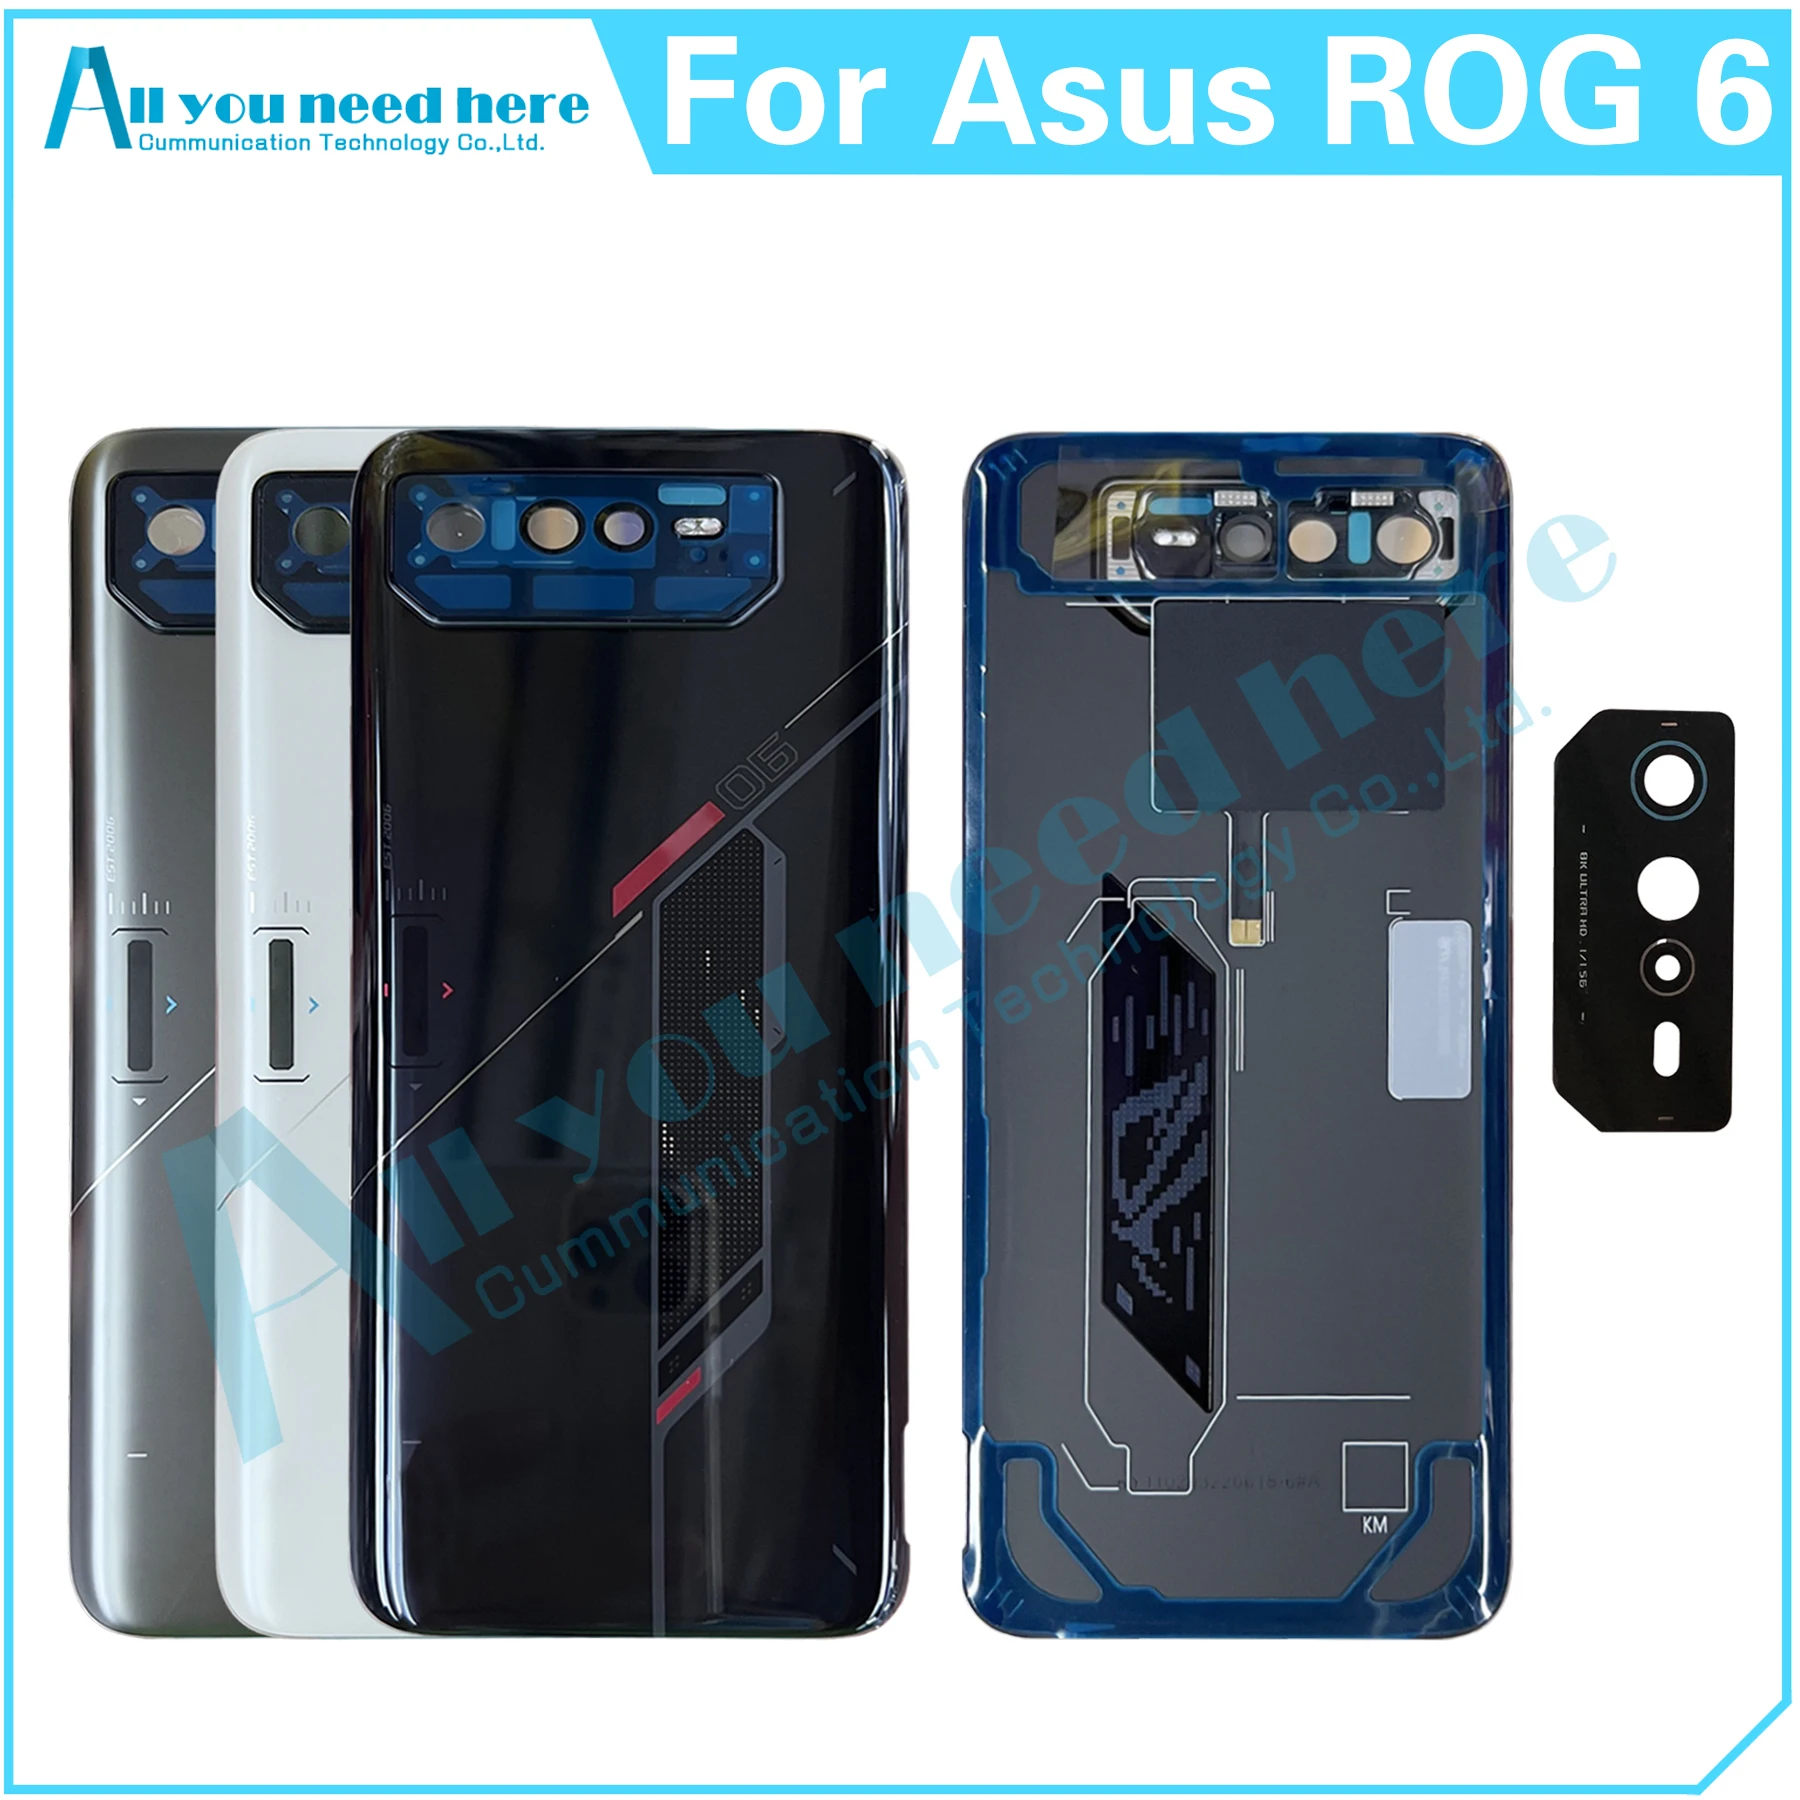 

Оригинальный чехол для Asus ROG Phone 6 AI2201 ROG6 ROG 6, задняя крышка корпуса, задняя крышка, крышка аккумулятора